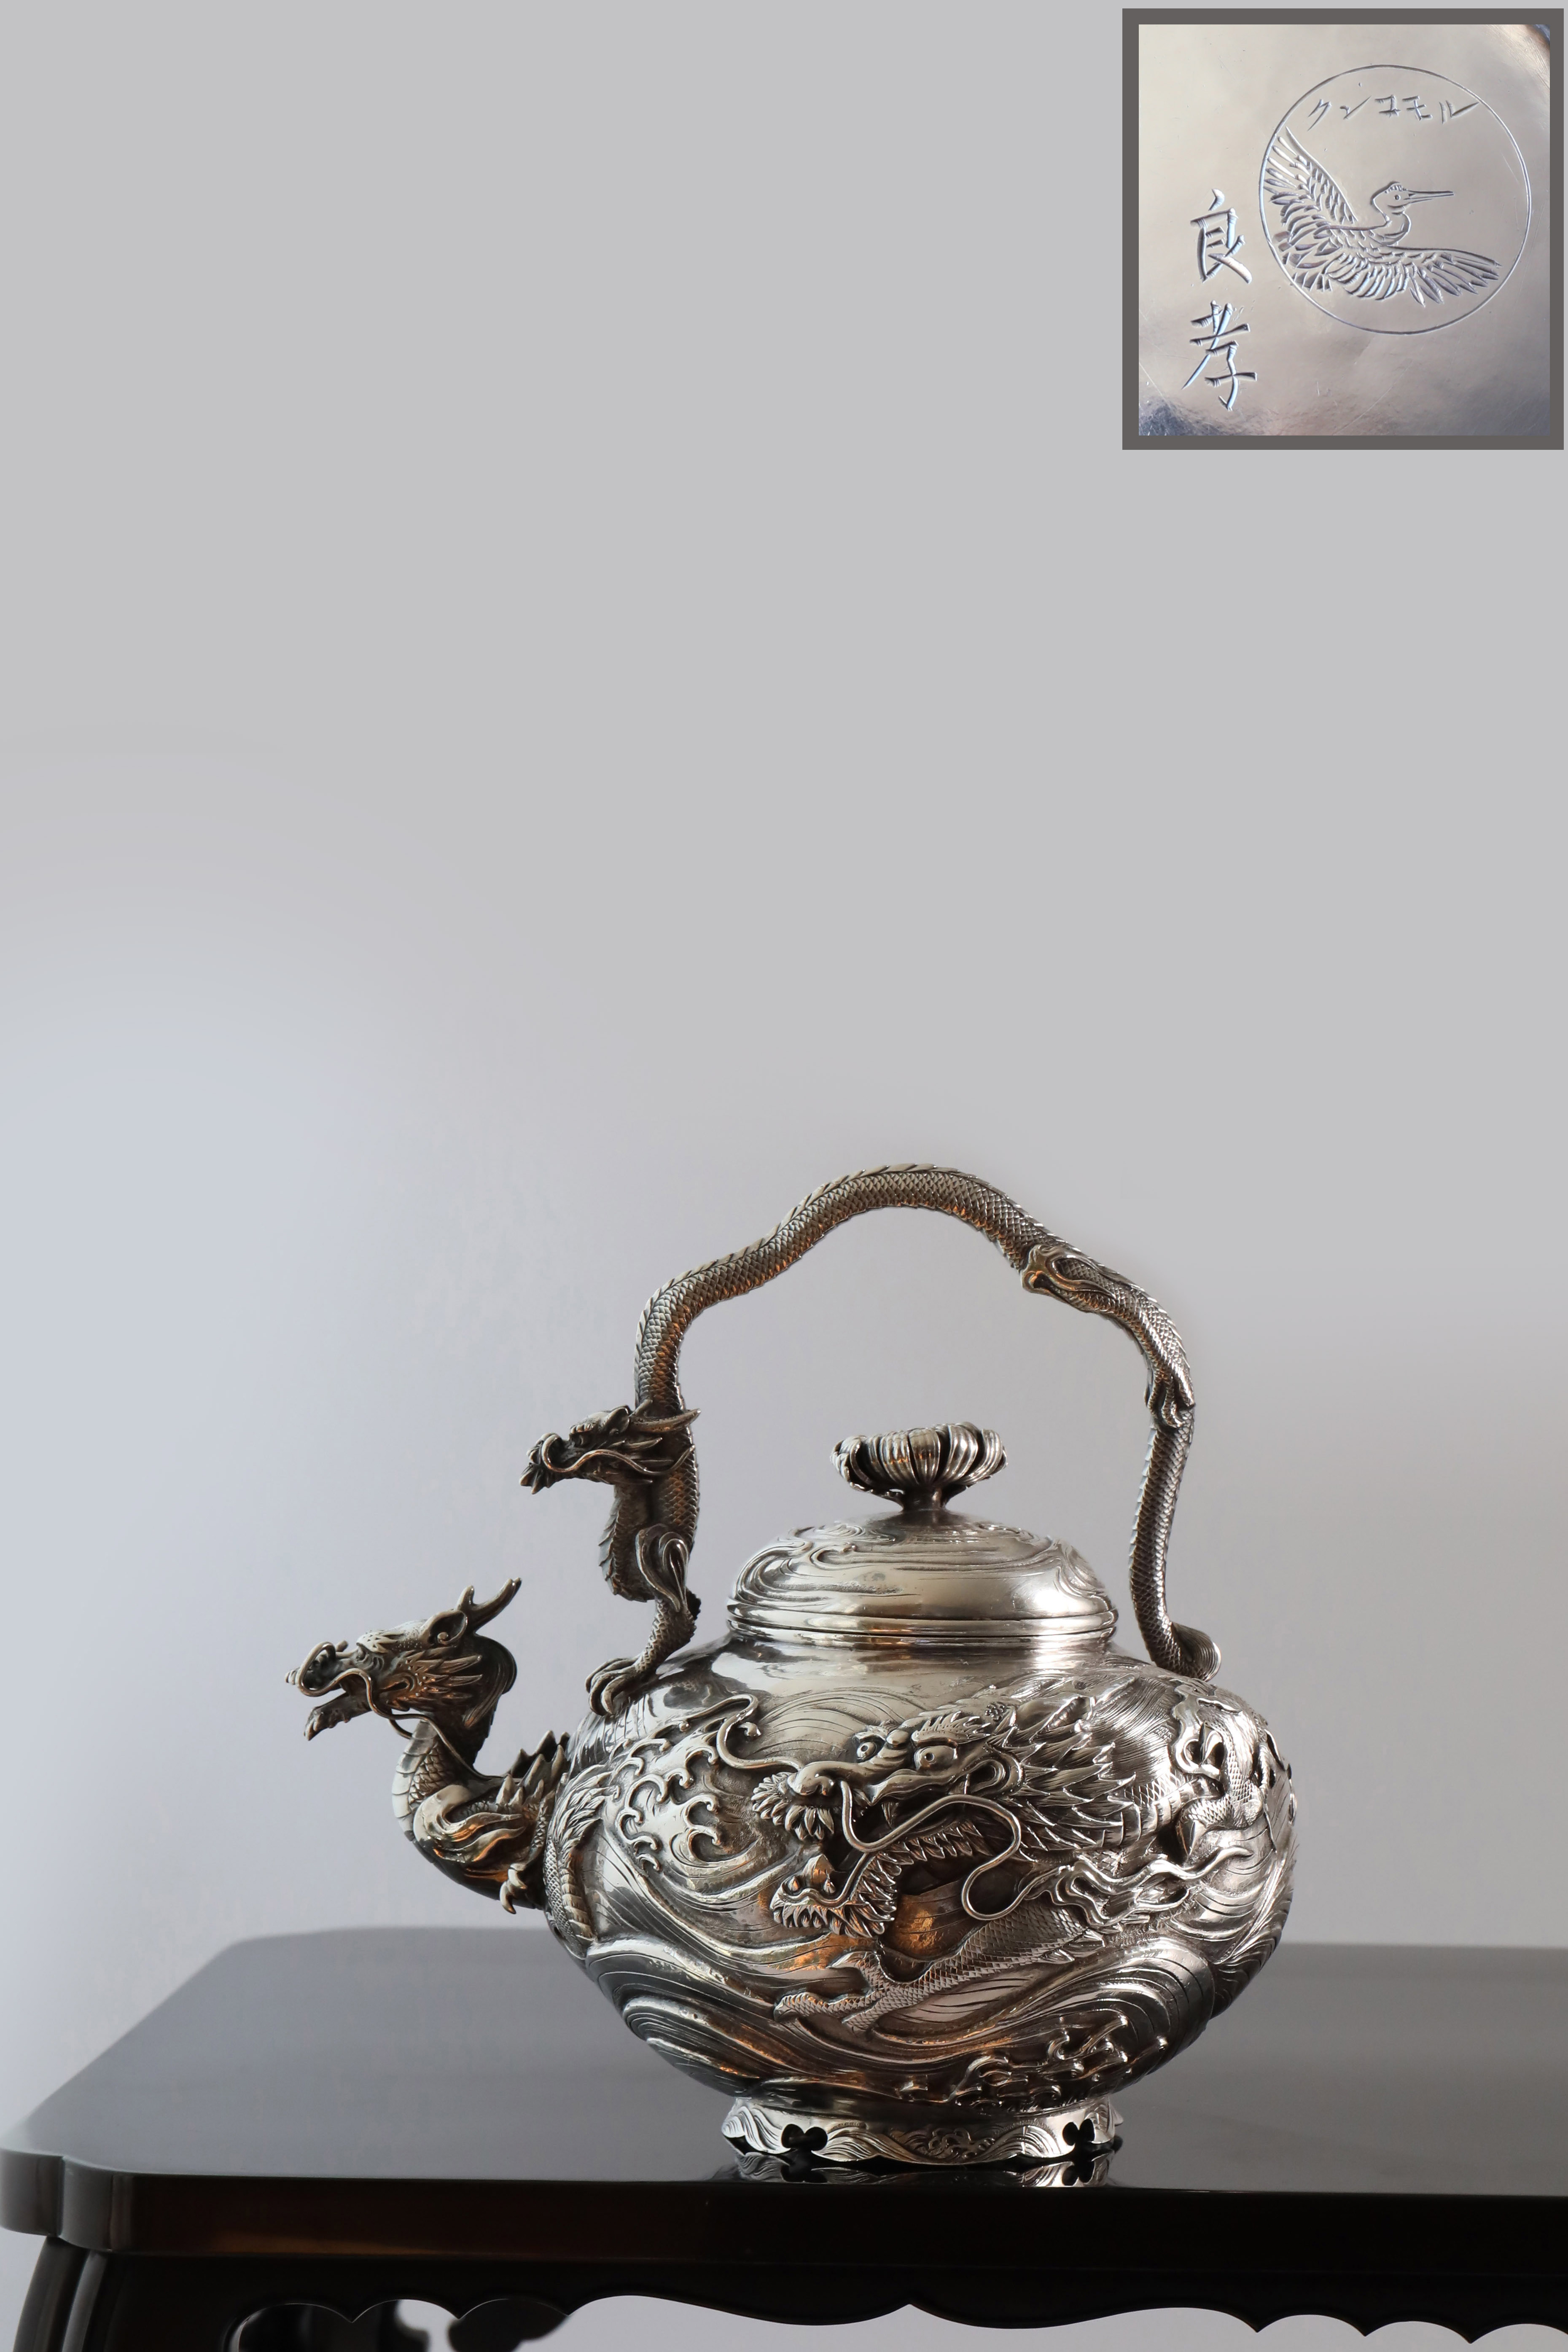 1890年日本良孝龙纹纯银茶壶/茶叶罐– 大雅堂非遗大雅堂司茶雅物